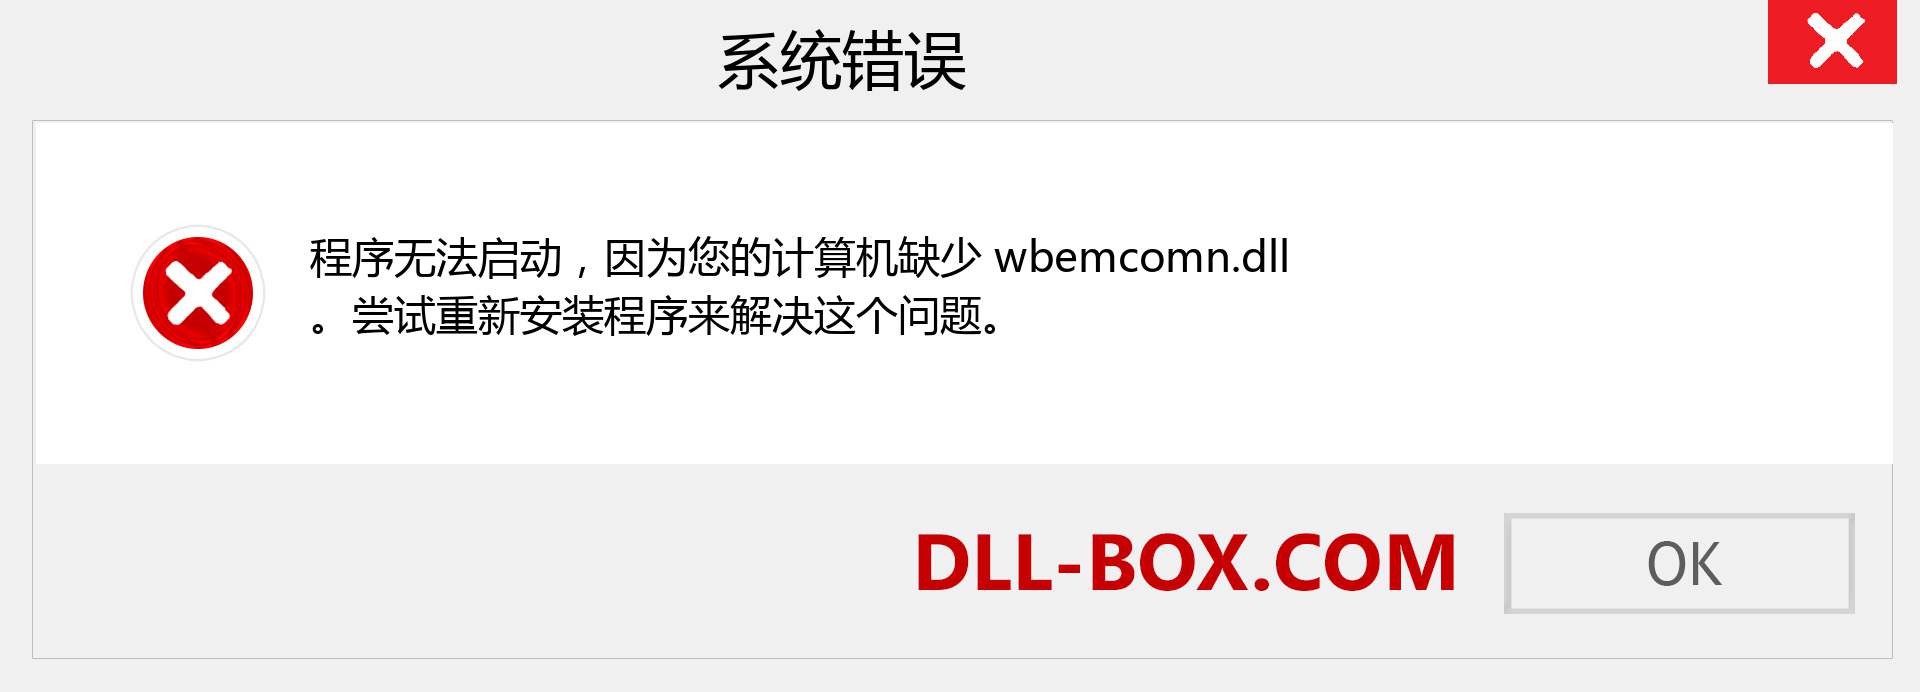 wbemcomn.dll 文件丢失？。 适用于 Windows 7、8、10 的下载 - 修复 Windows、照片、图像上的 wbemcomn dll 丢失错误